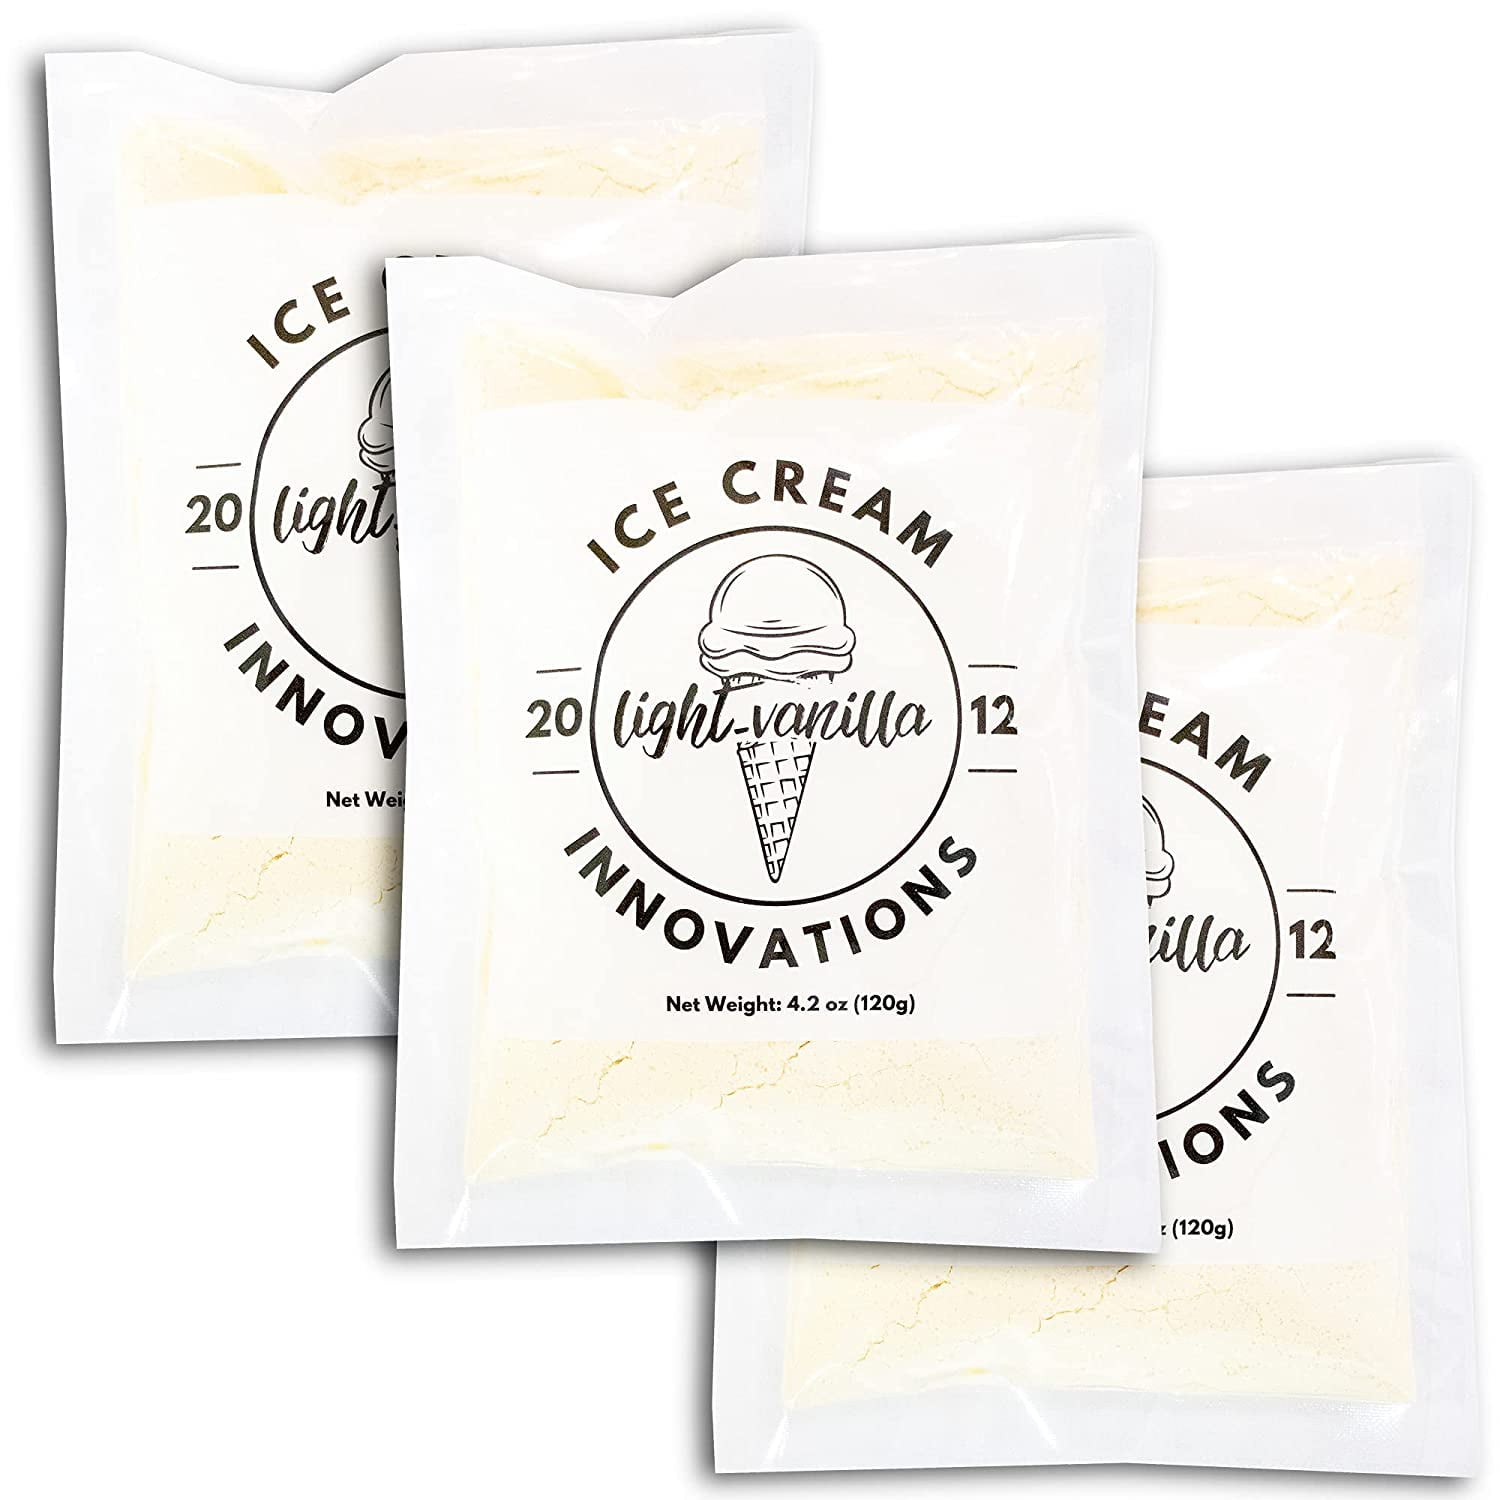 19 Ice Cream Accessories for Frozen Treat Fanatics